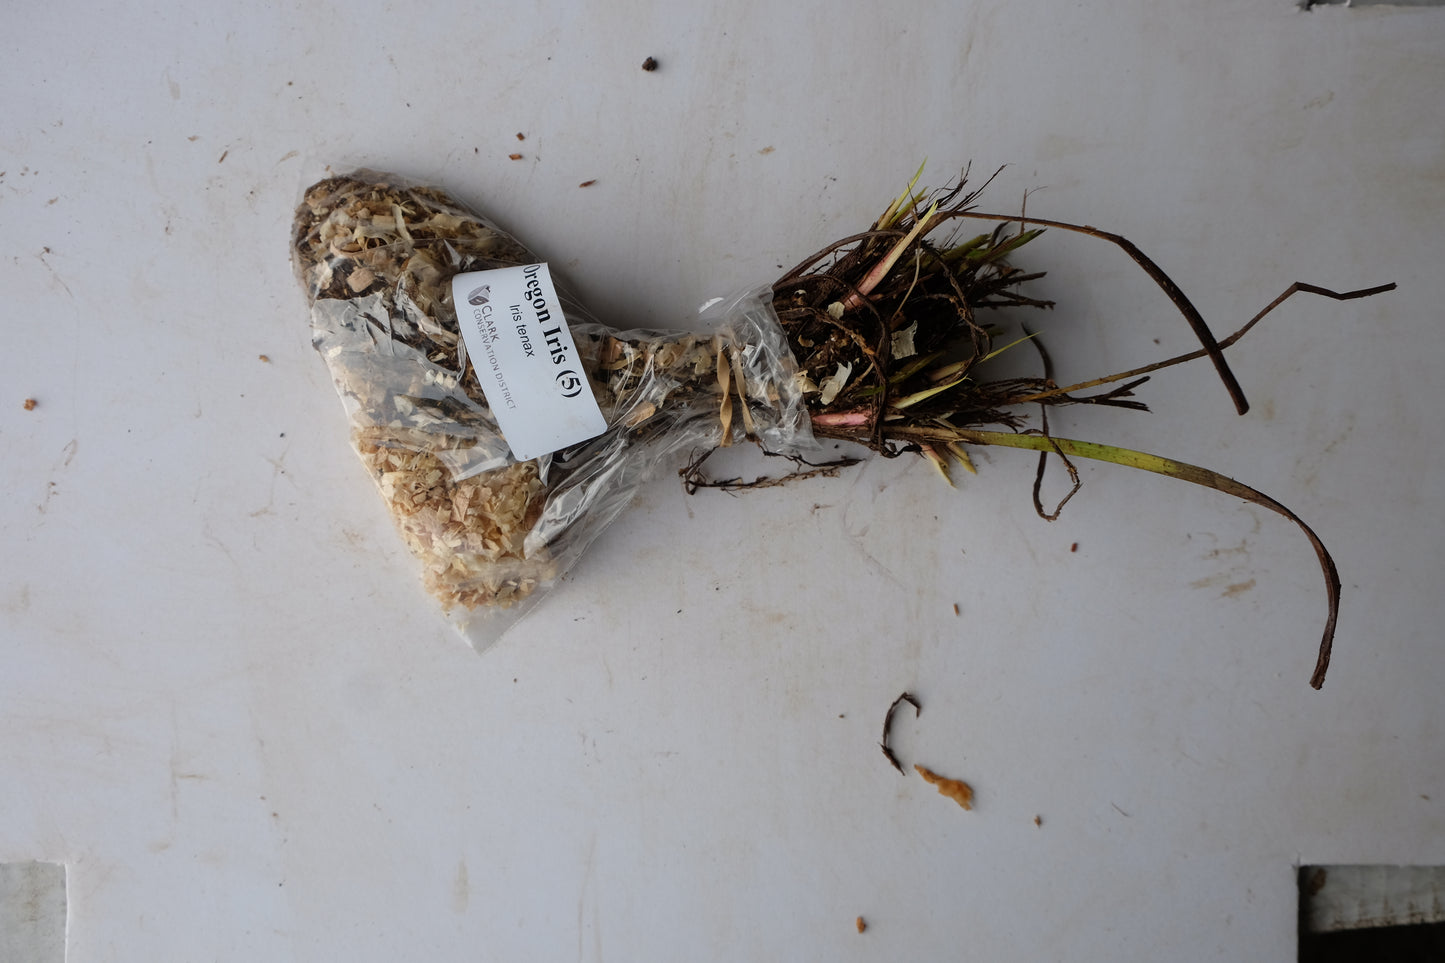 Oregon Iris - paquete de 5 plantas a raíz desnuda